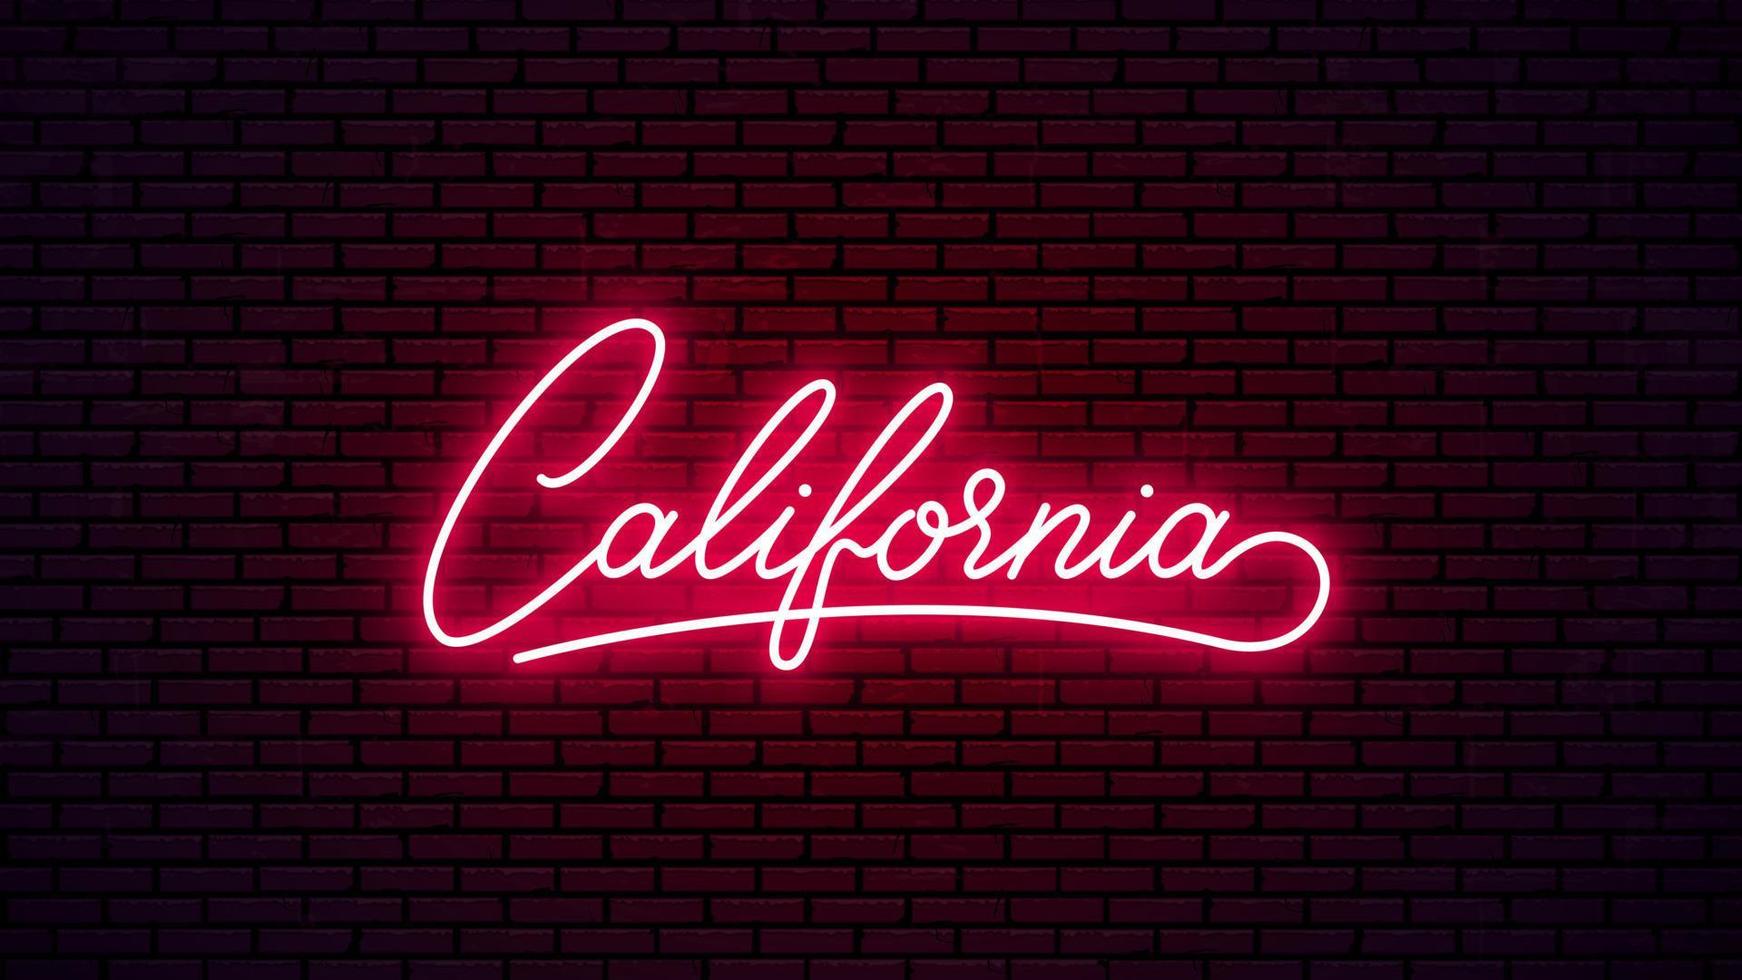 Schild mit Neon-Schriftzug in Kalifornien. leuchtend roter Text für den Namen der Bar, des Clubs usw. fertige Beschriftung für Neonzeichenform. Kalifornien, Neon-Logo-Design. vektor